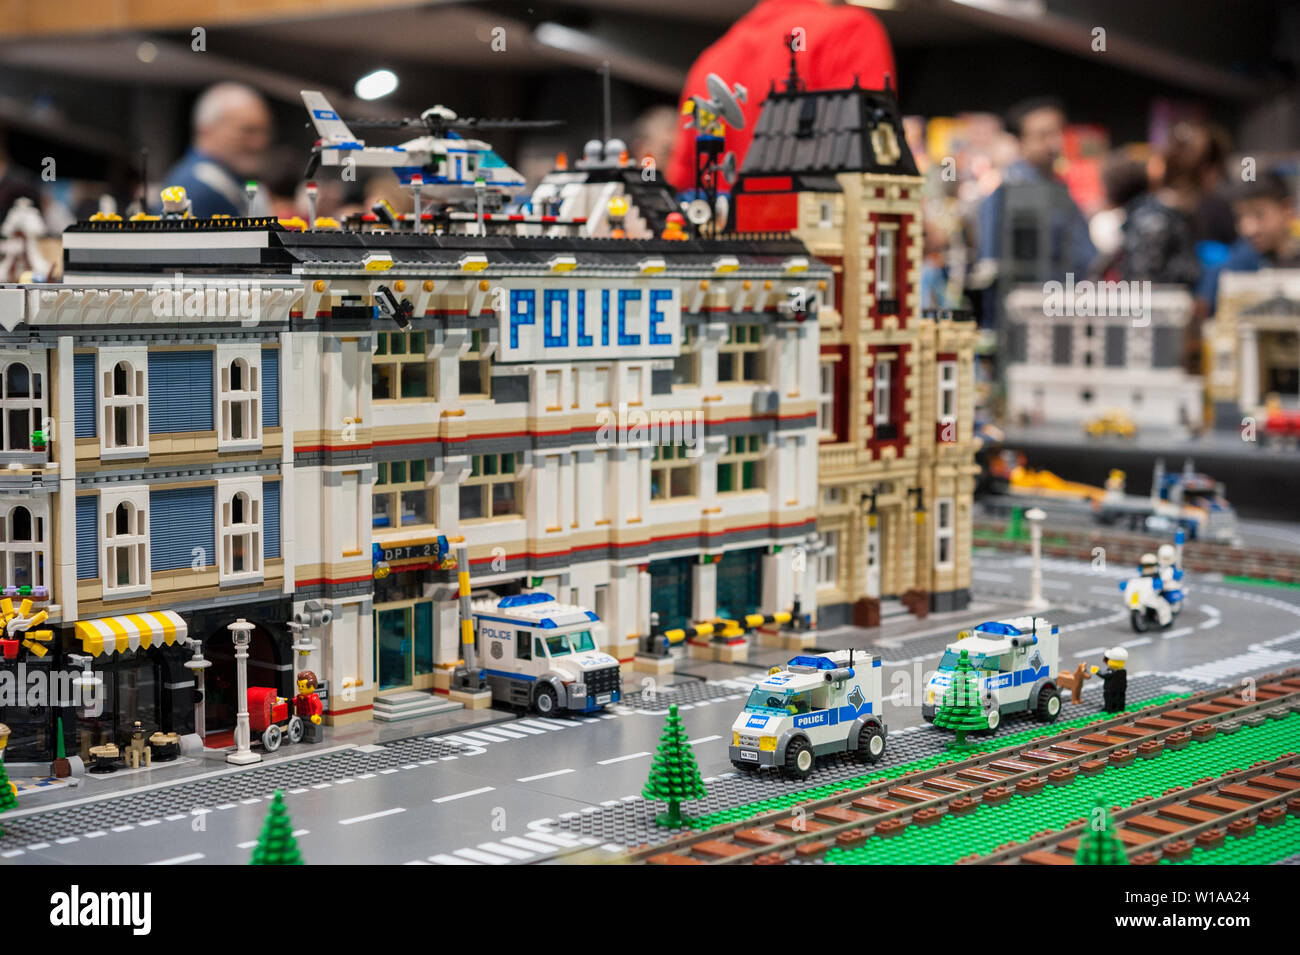 Lego landscape immagini e fotografie stock ad alta risoluzione - Alamy